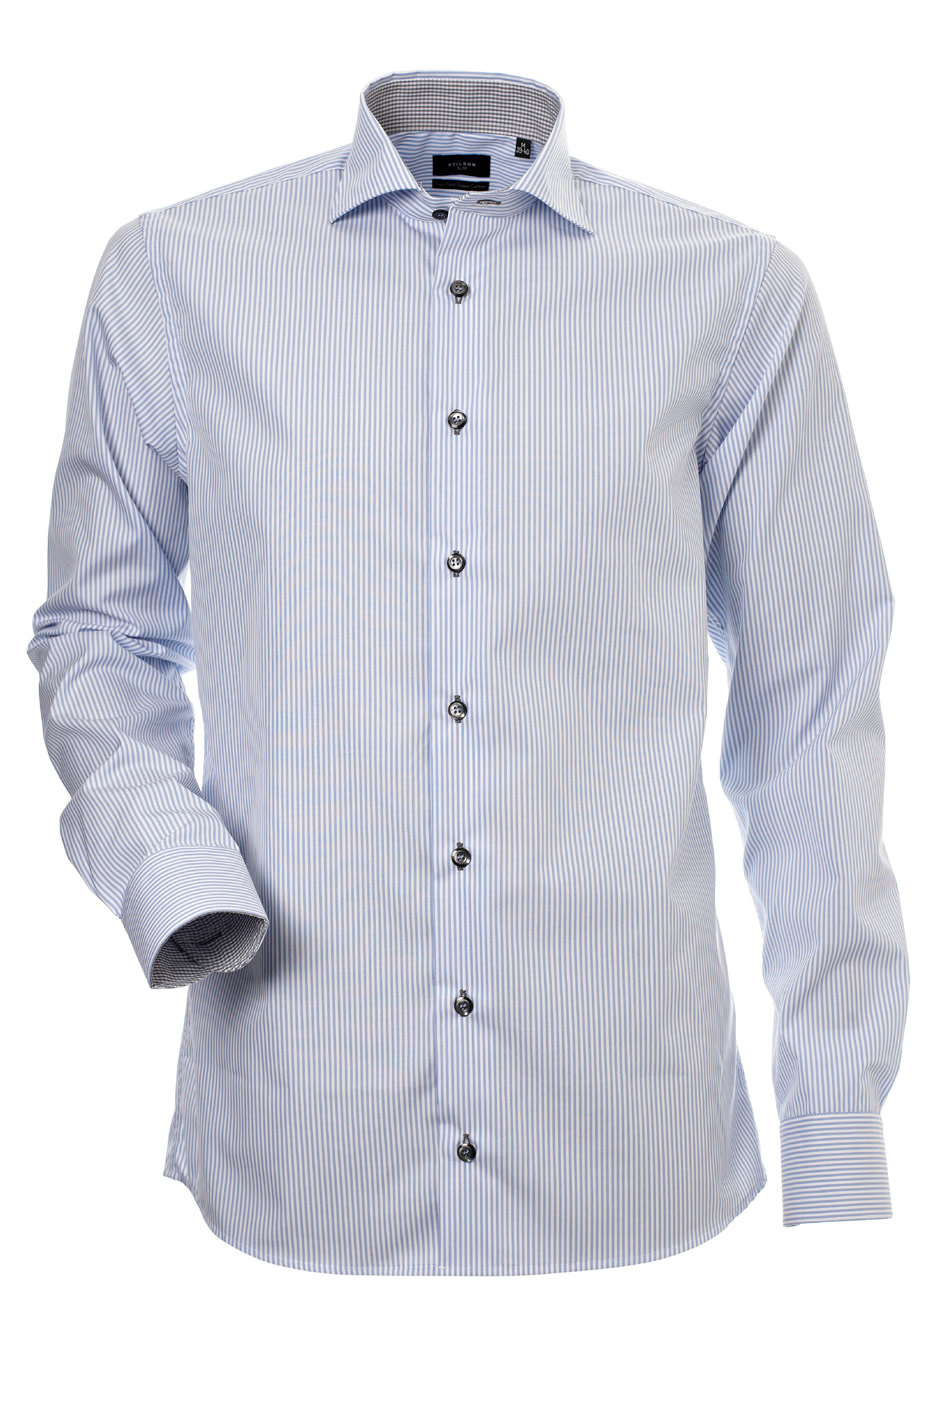 Herrskjorta, Ljusblå-vit rand med kontrast, Slim Cut